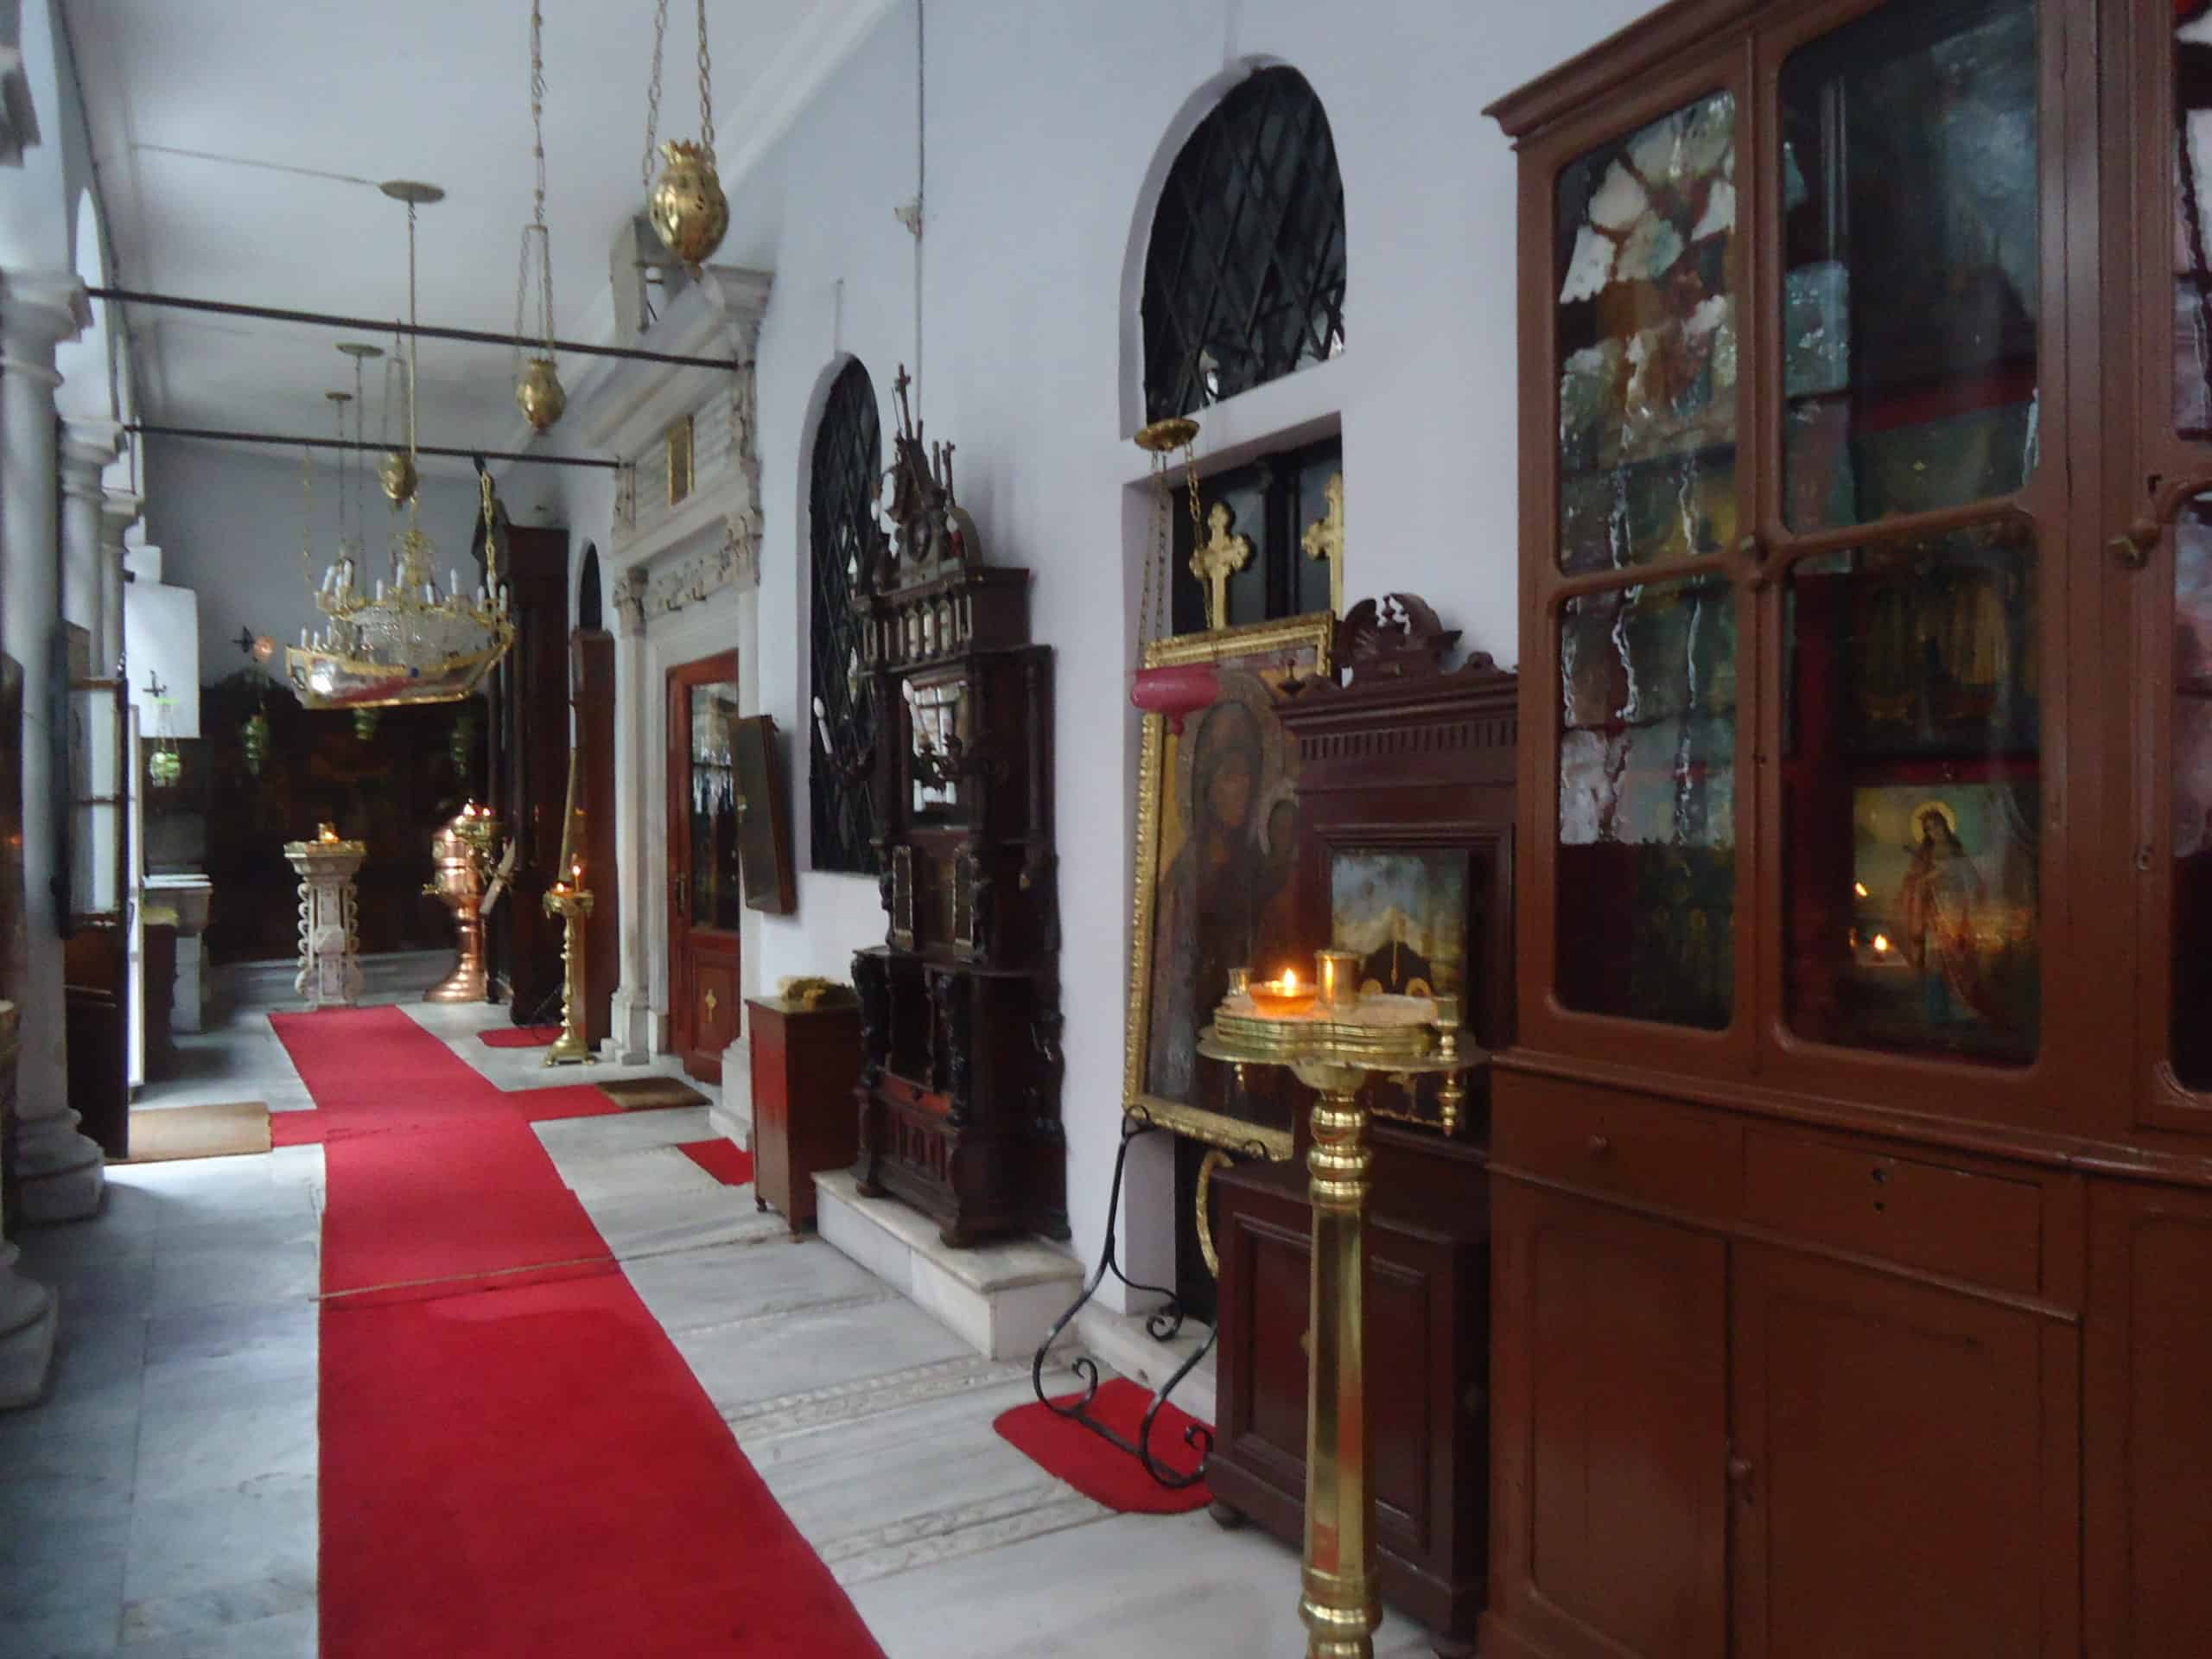 Narthex of the Meryem Ana Turkish Orthodox Church